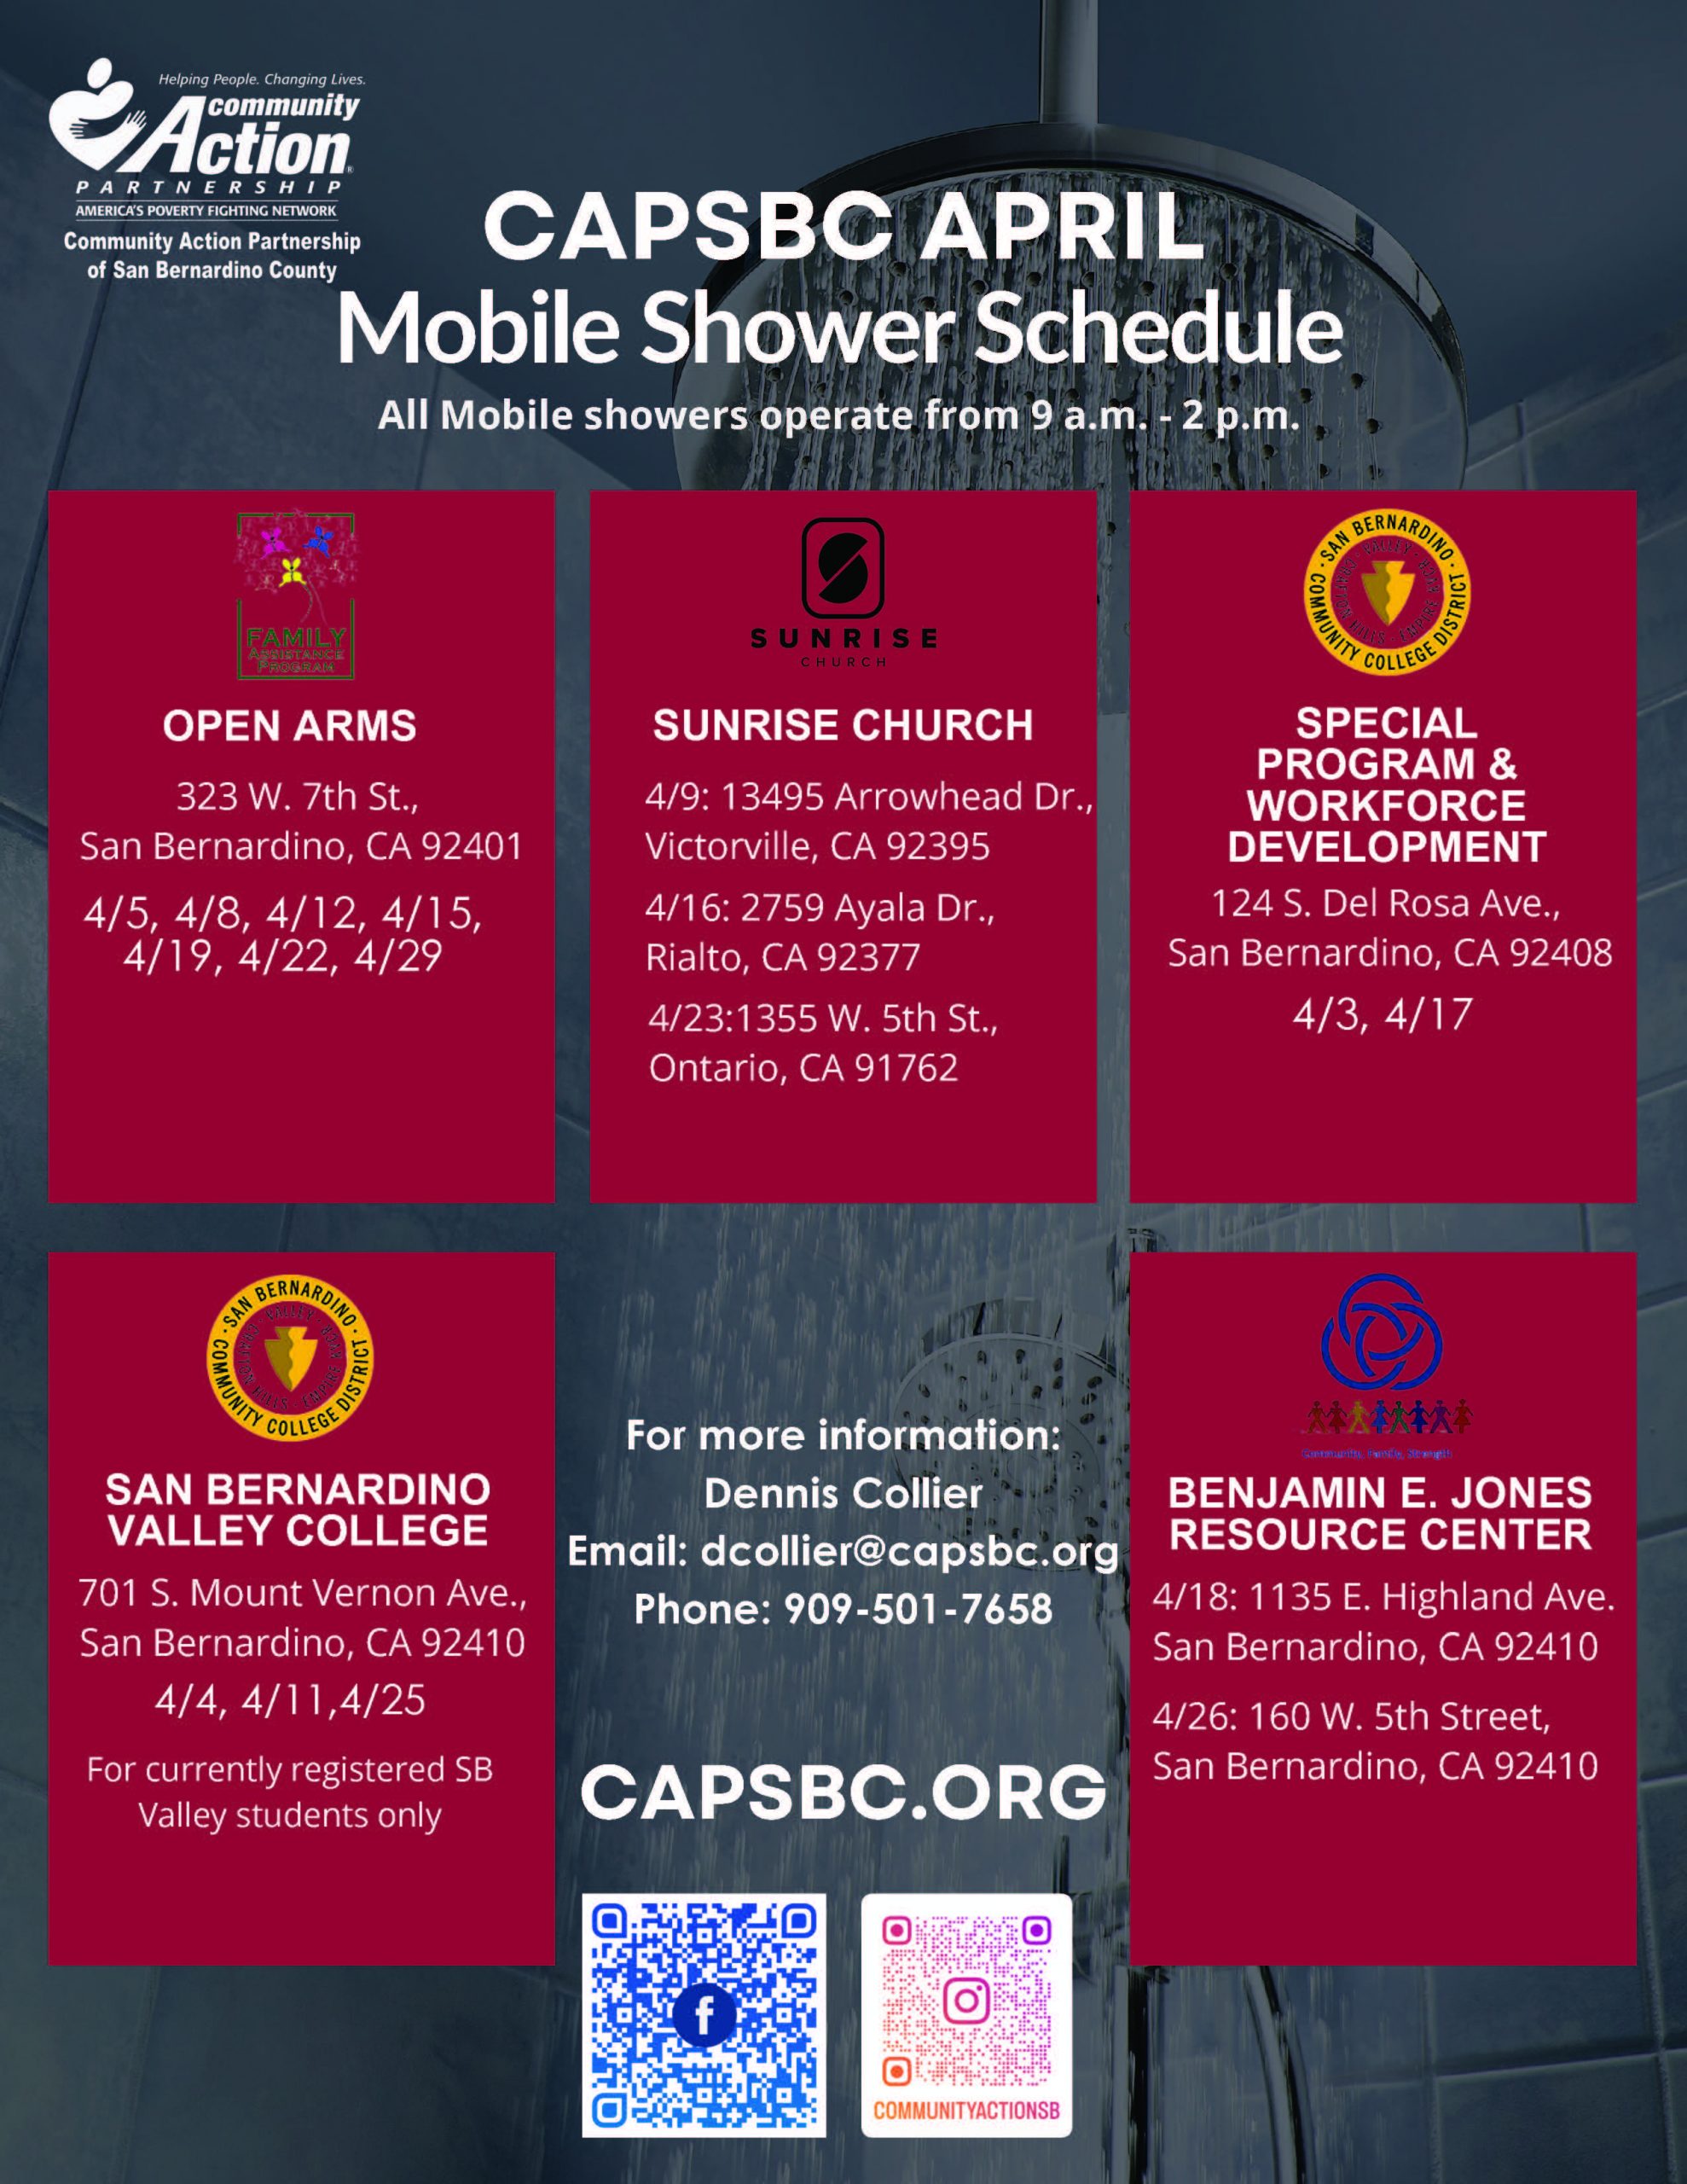 CAPSBC APRIL
Mobile Shower Schedule flyer.